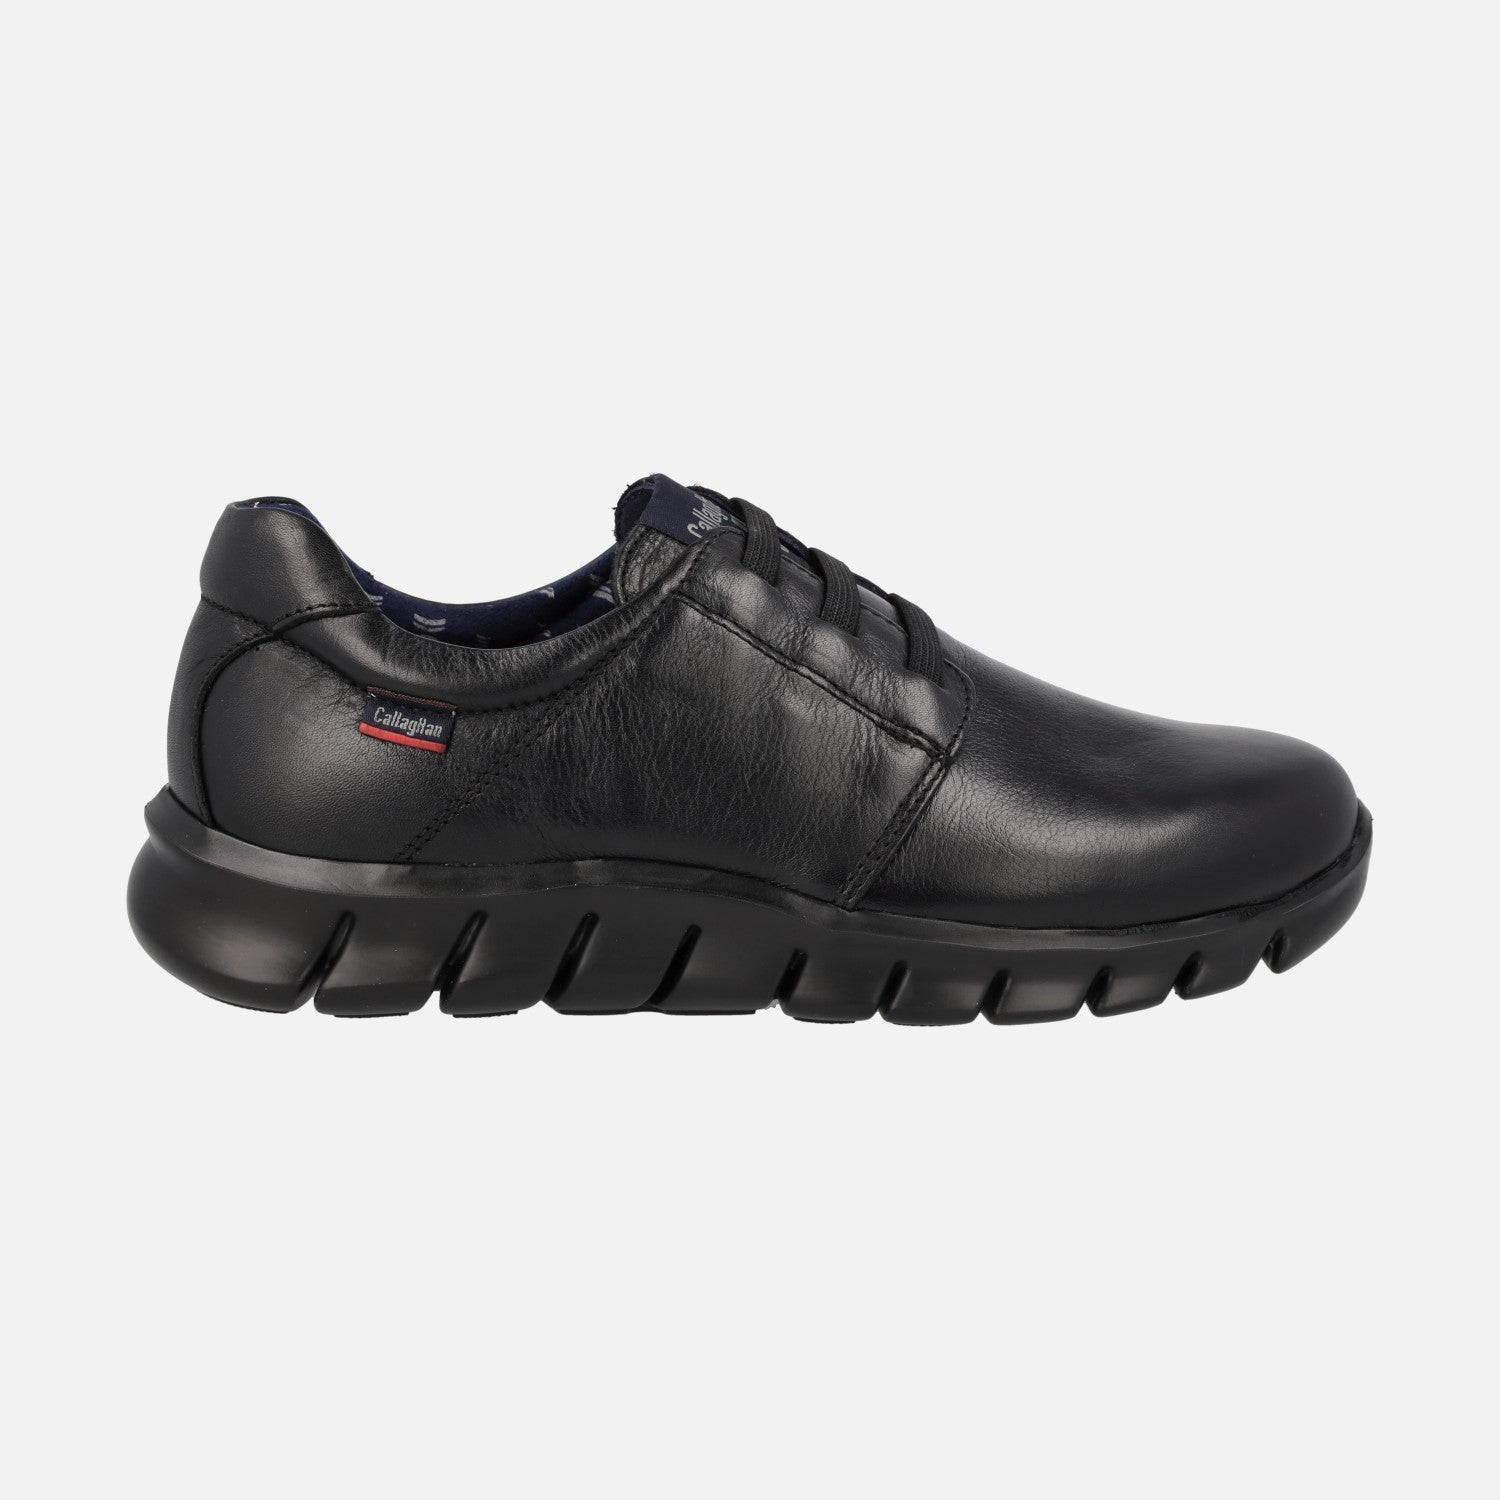 CallagHan ZAPATO - Zapatos de vestir - black/negro 